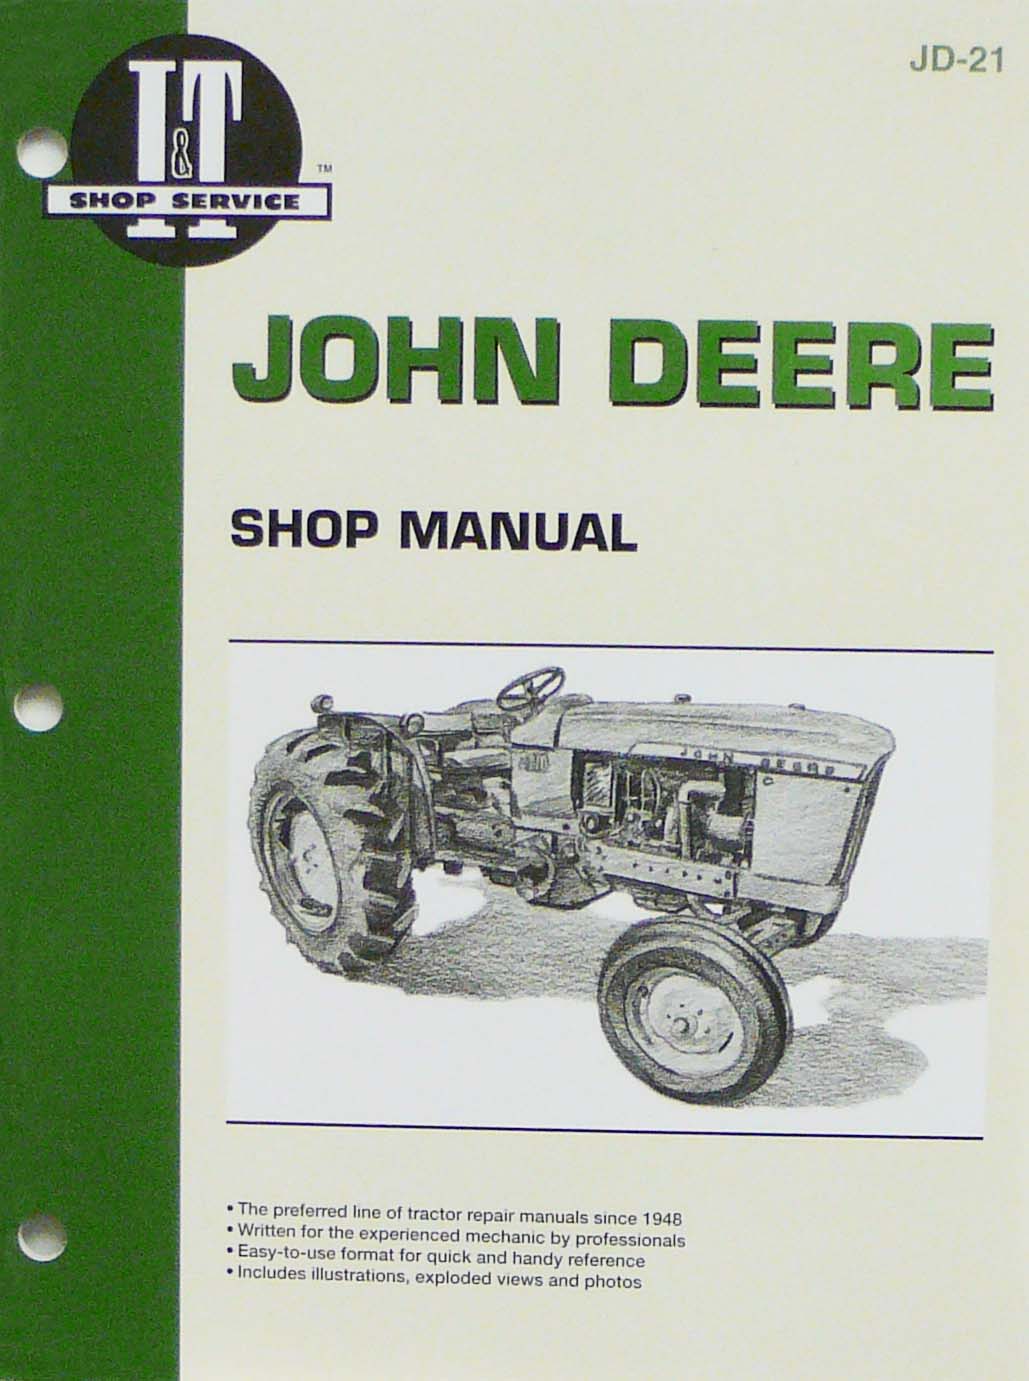 I&T Service Manual - John Deere JD21 - GoTractorParts.Com